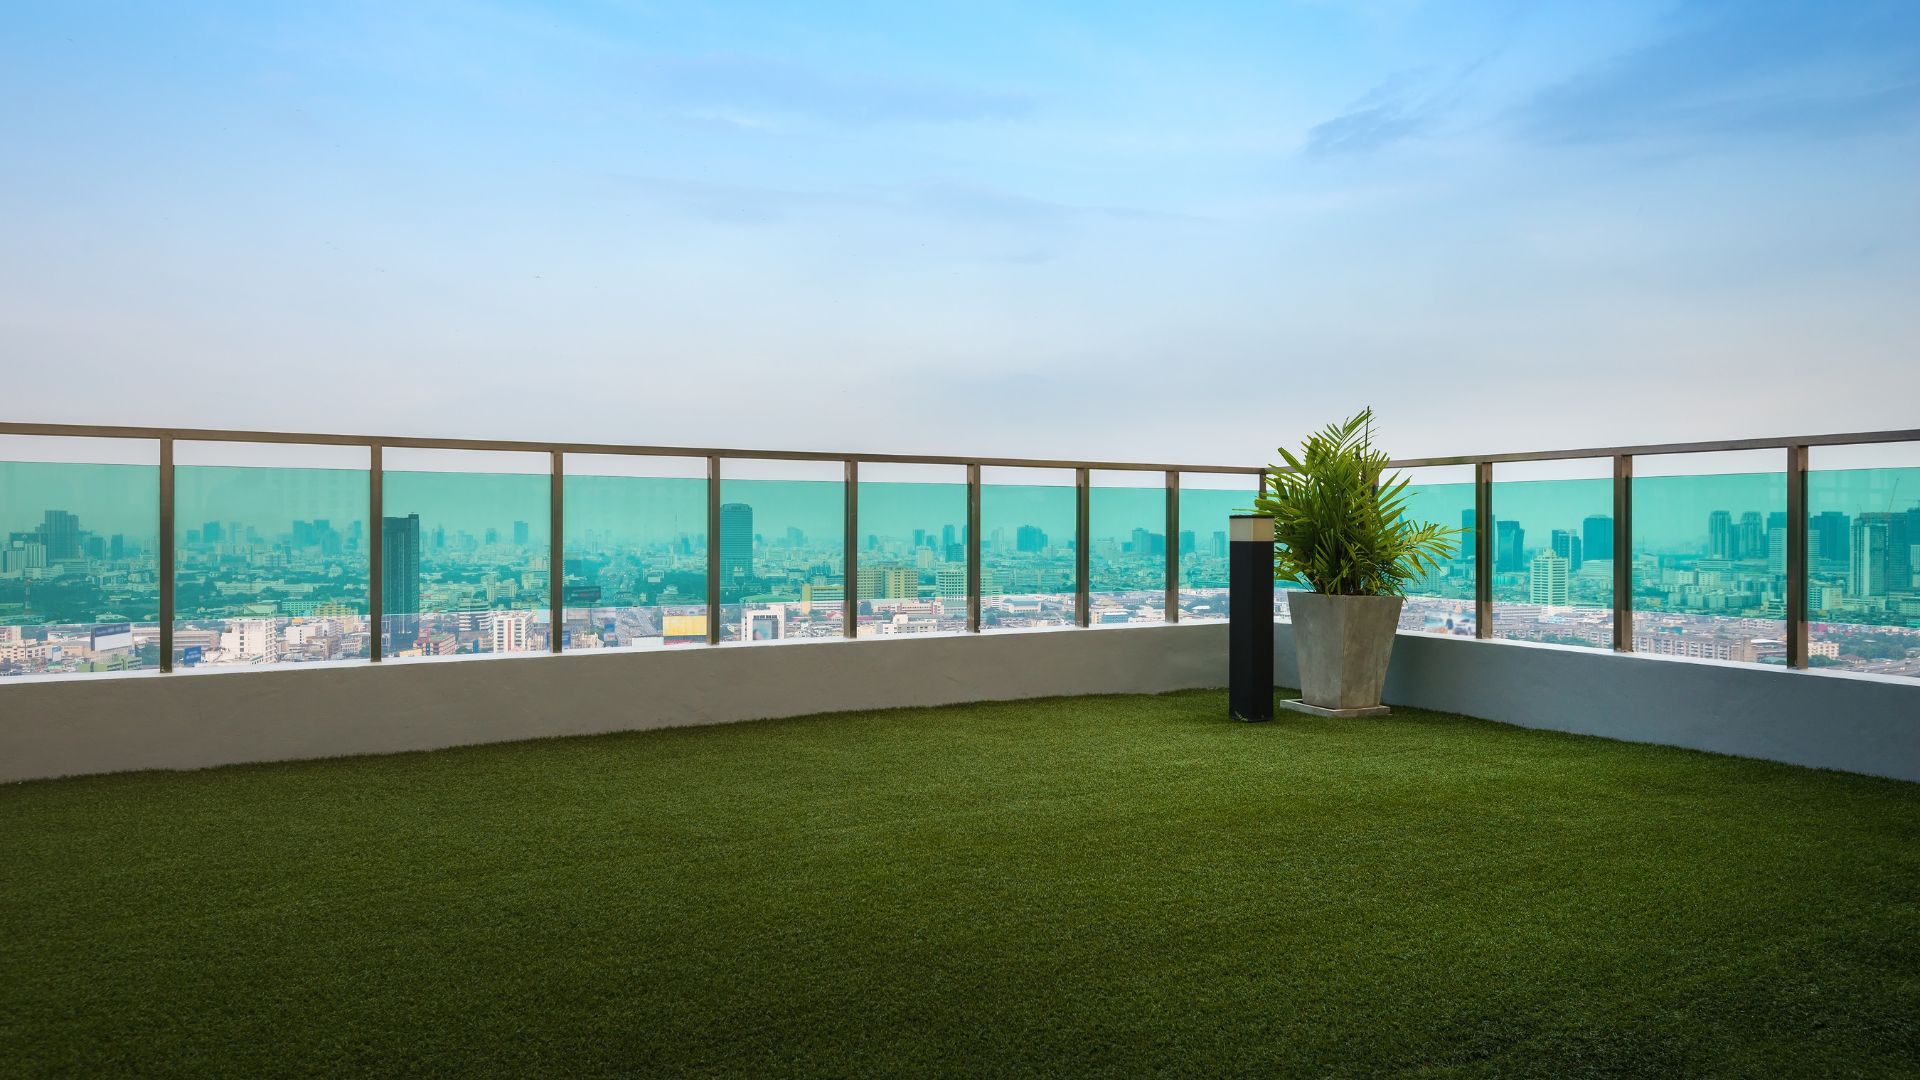 piso para terraço grama sintética